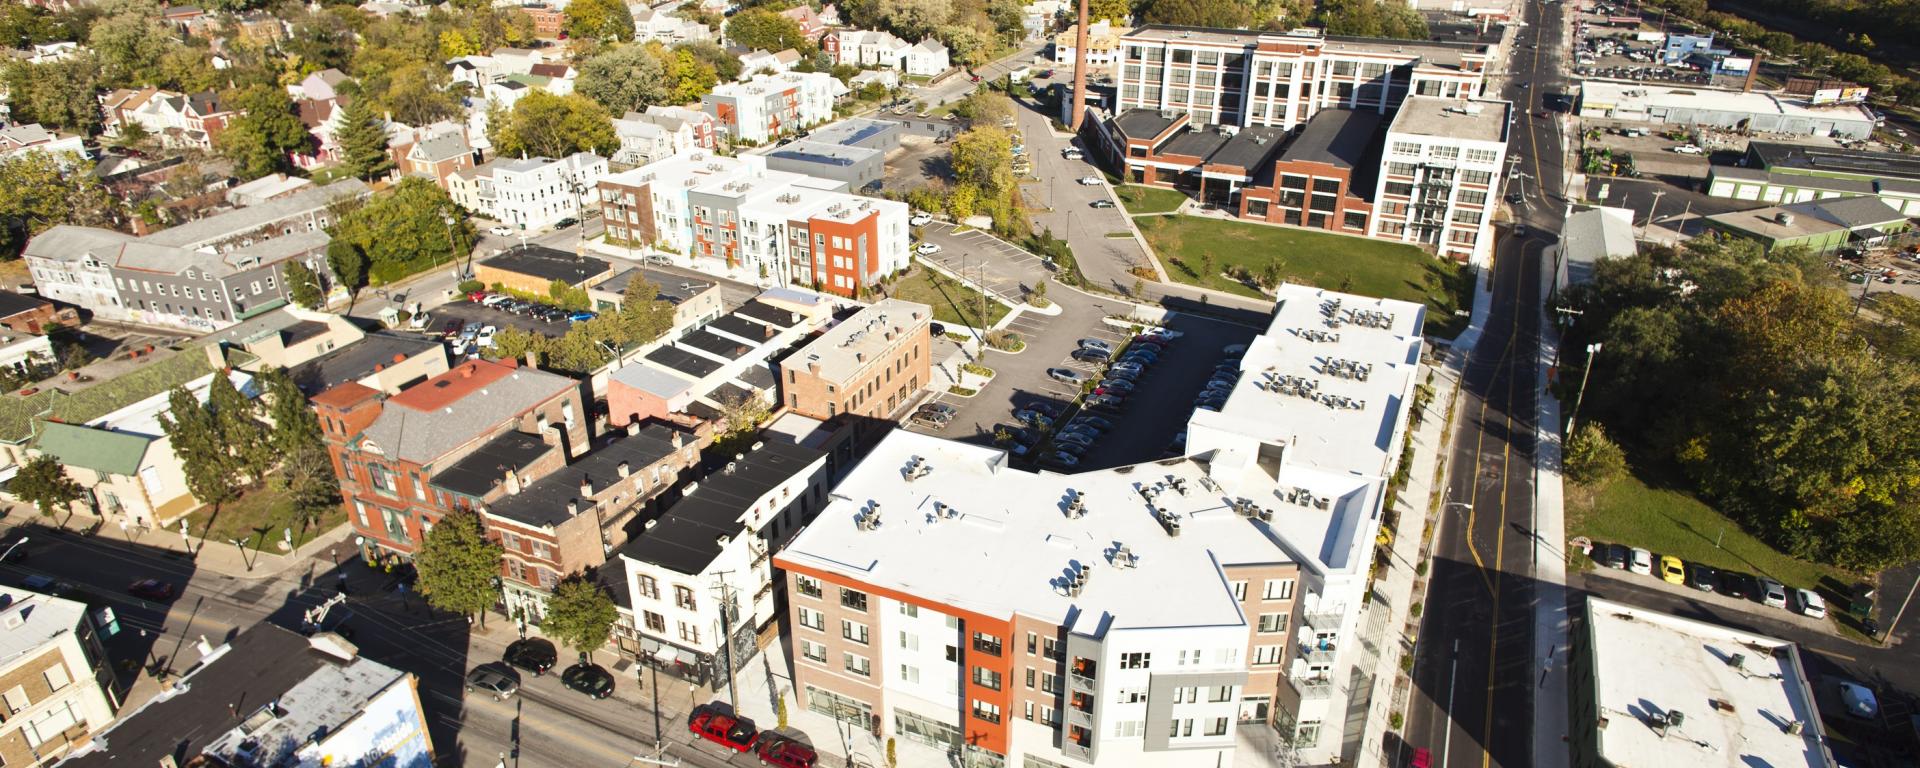 aerial photo of apartment complex